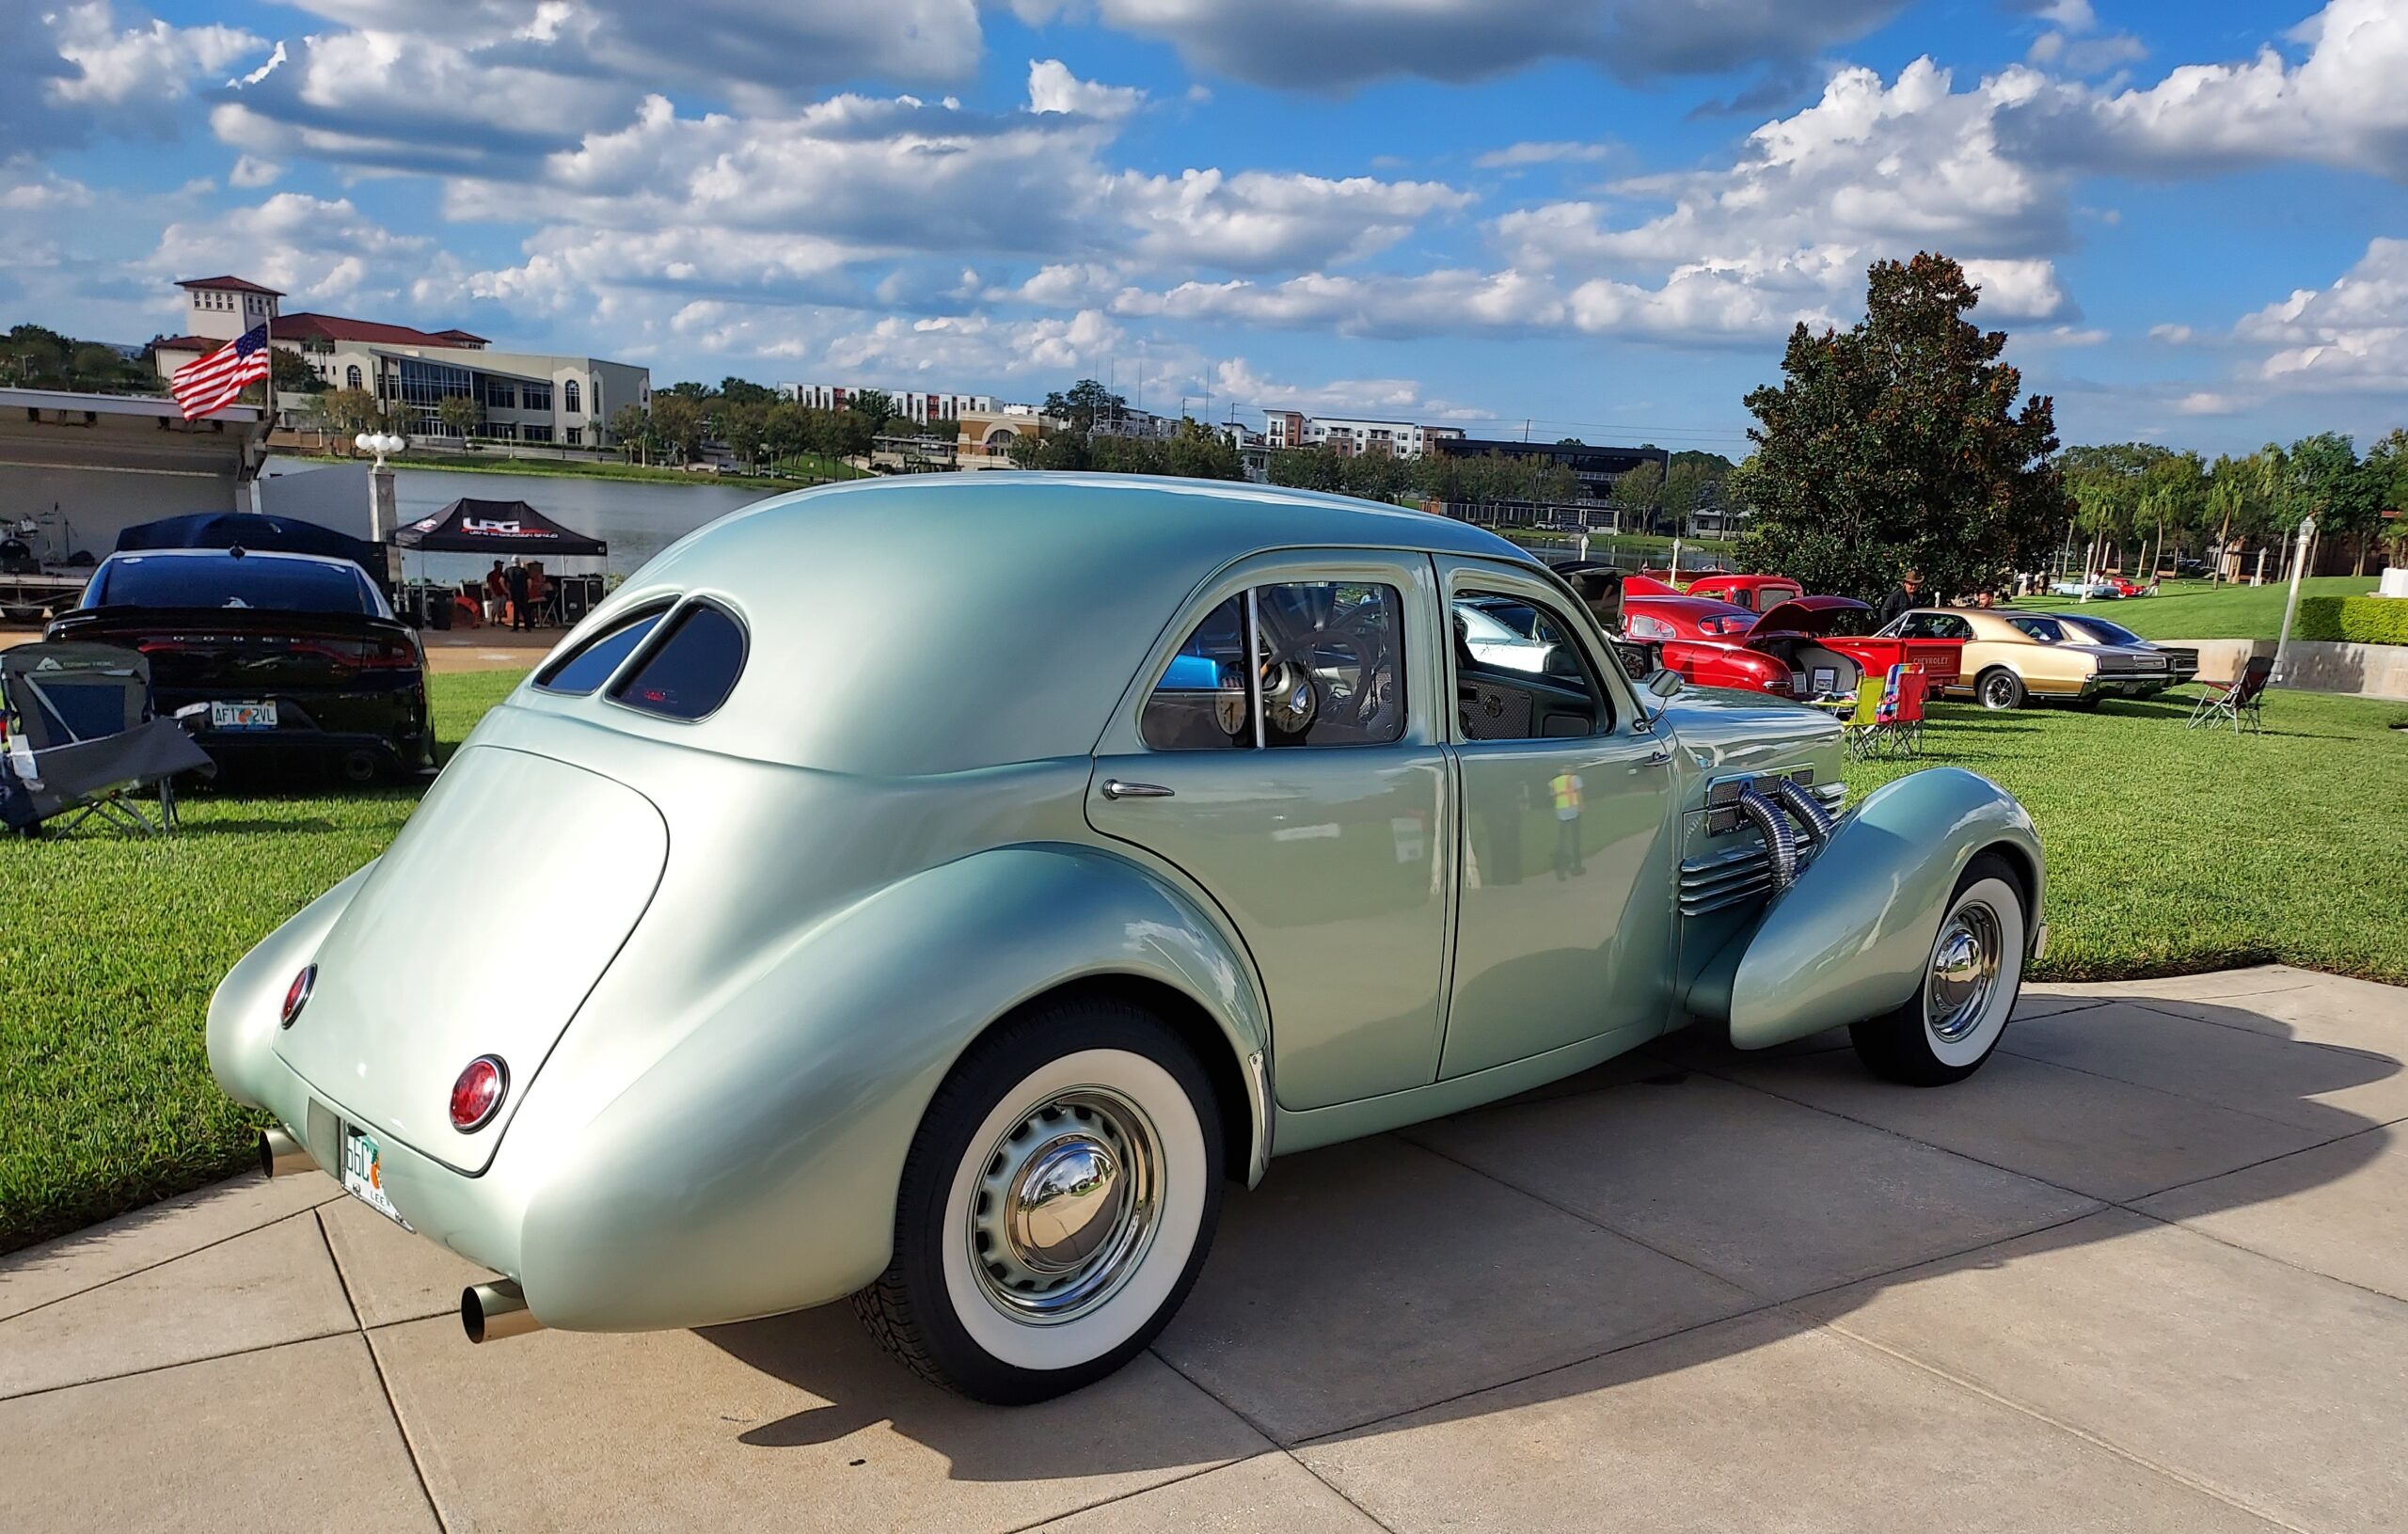 Lake Mirror Classic Car Show